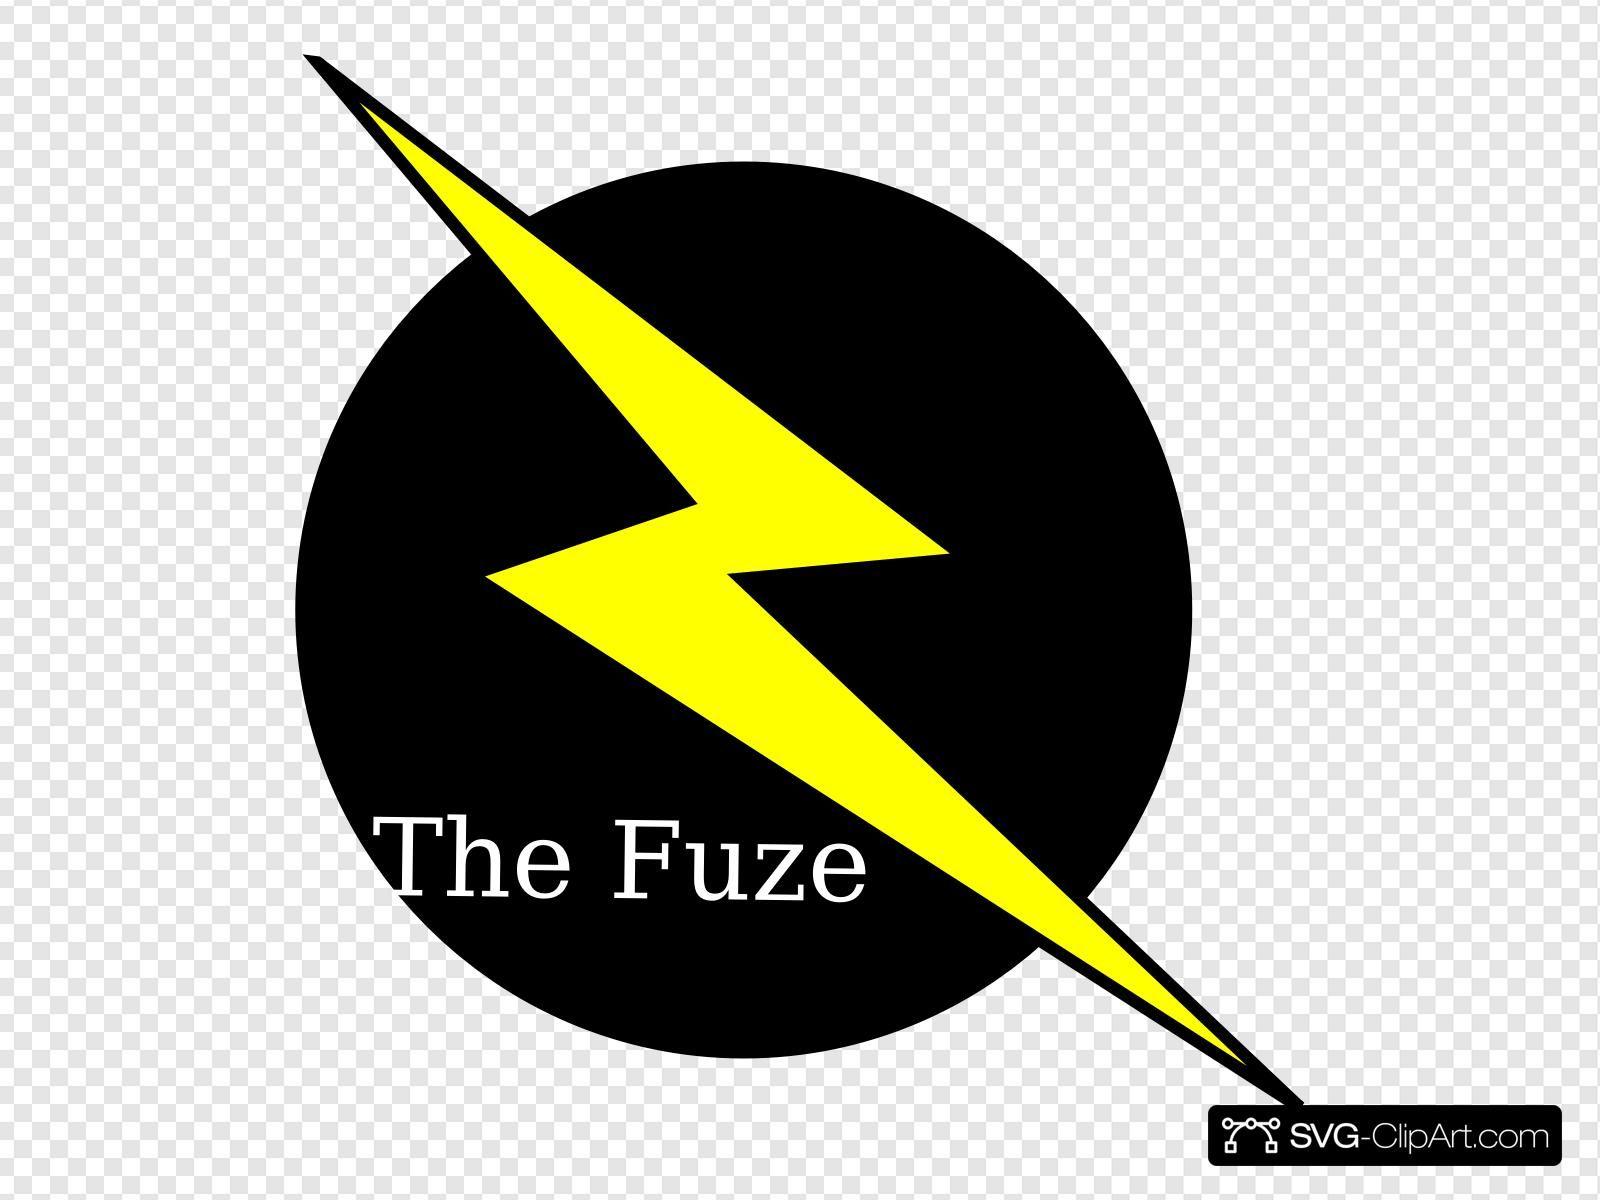 Fuze Logo - The Fuze Logo Clip art, Icon and SVG